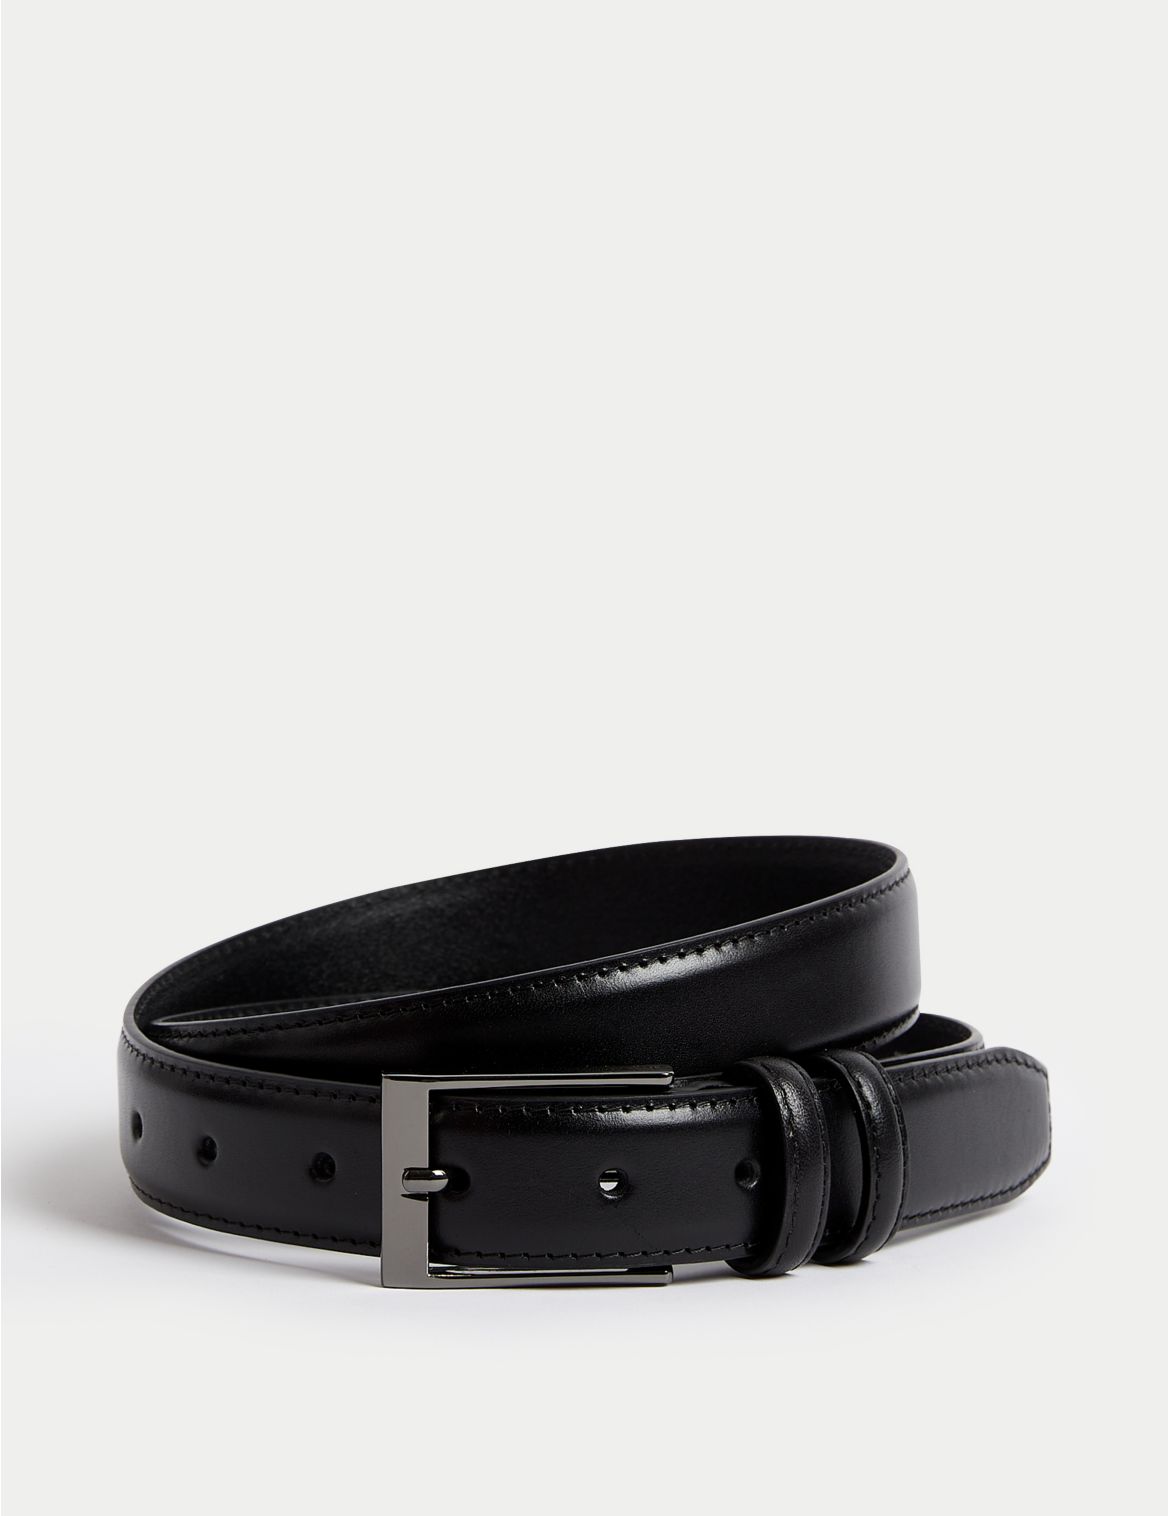 Leather Smart Belt black